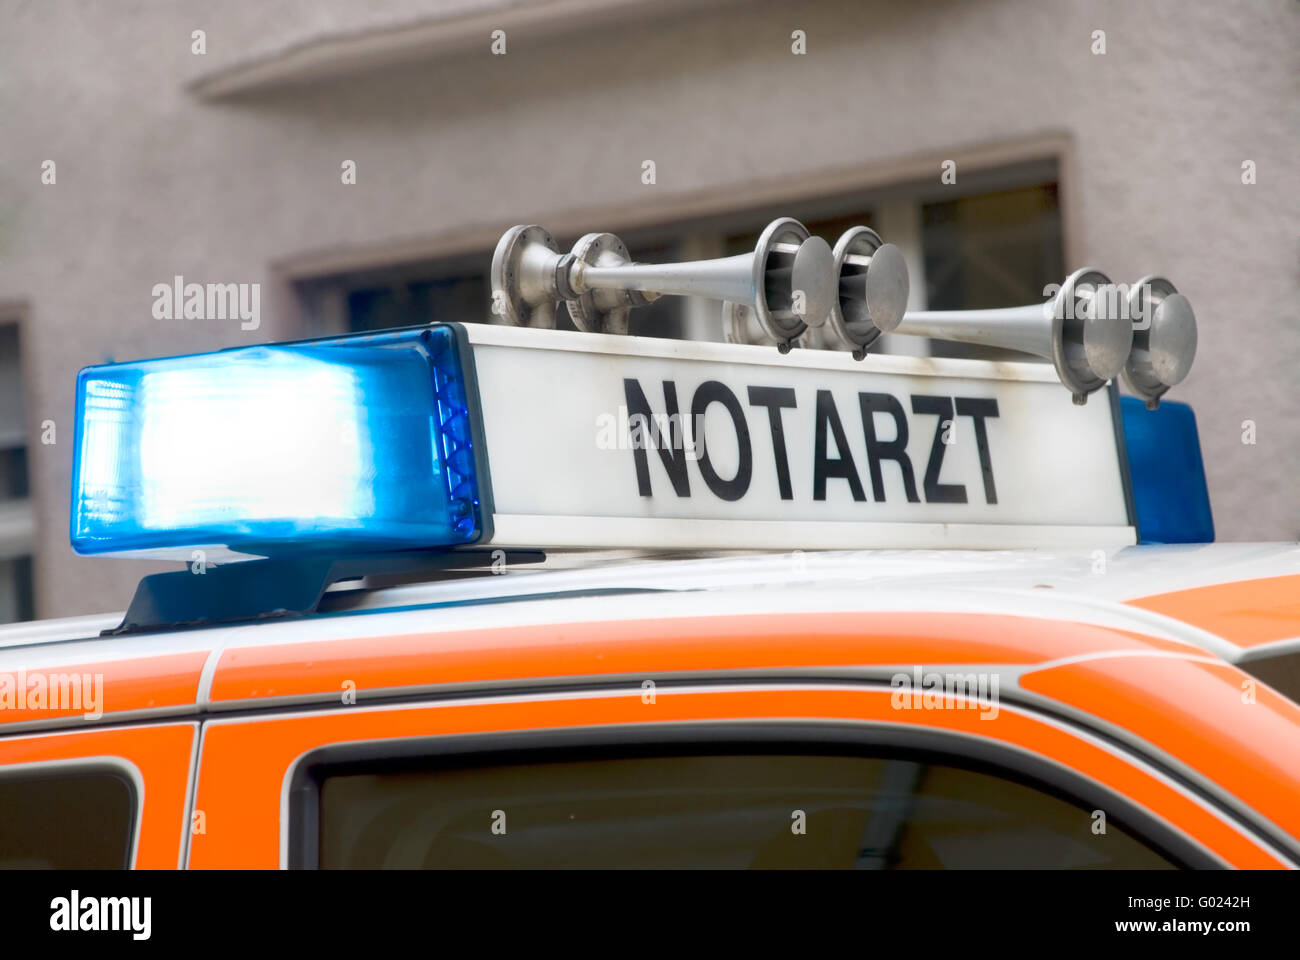 Dach von einem deutschen Notfall Auto mit Blaulicht Stockfoto